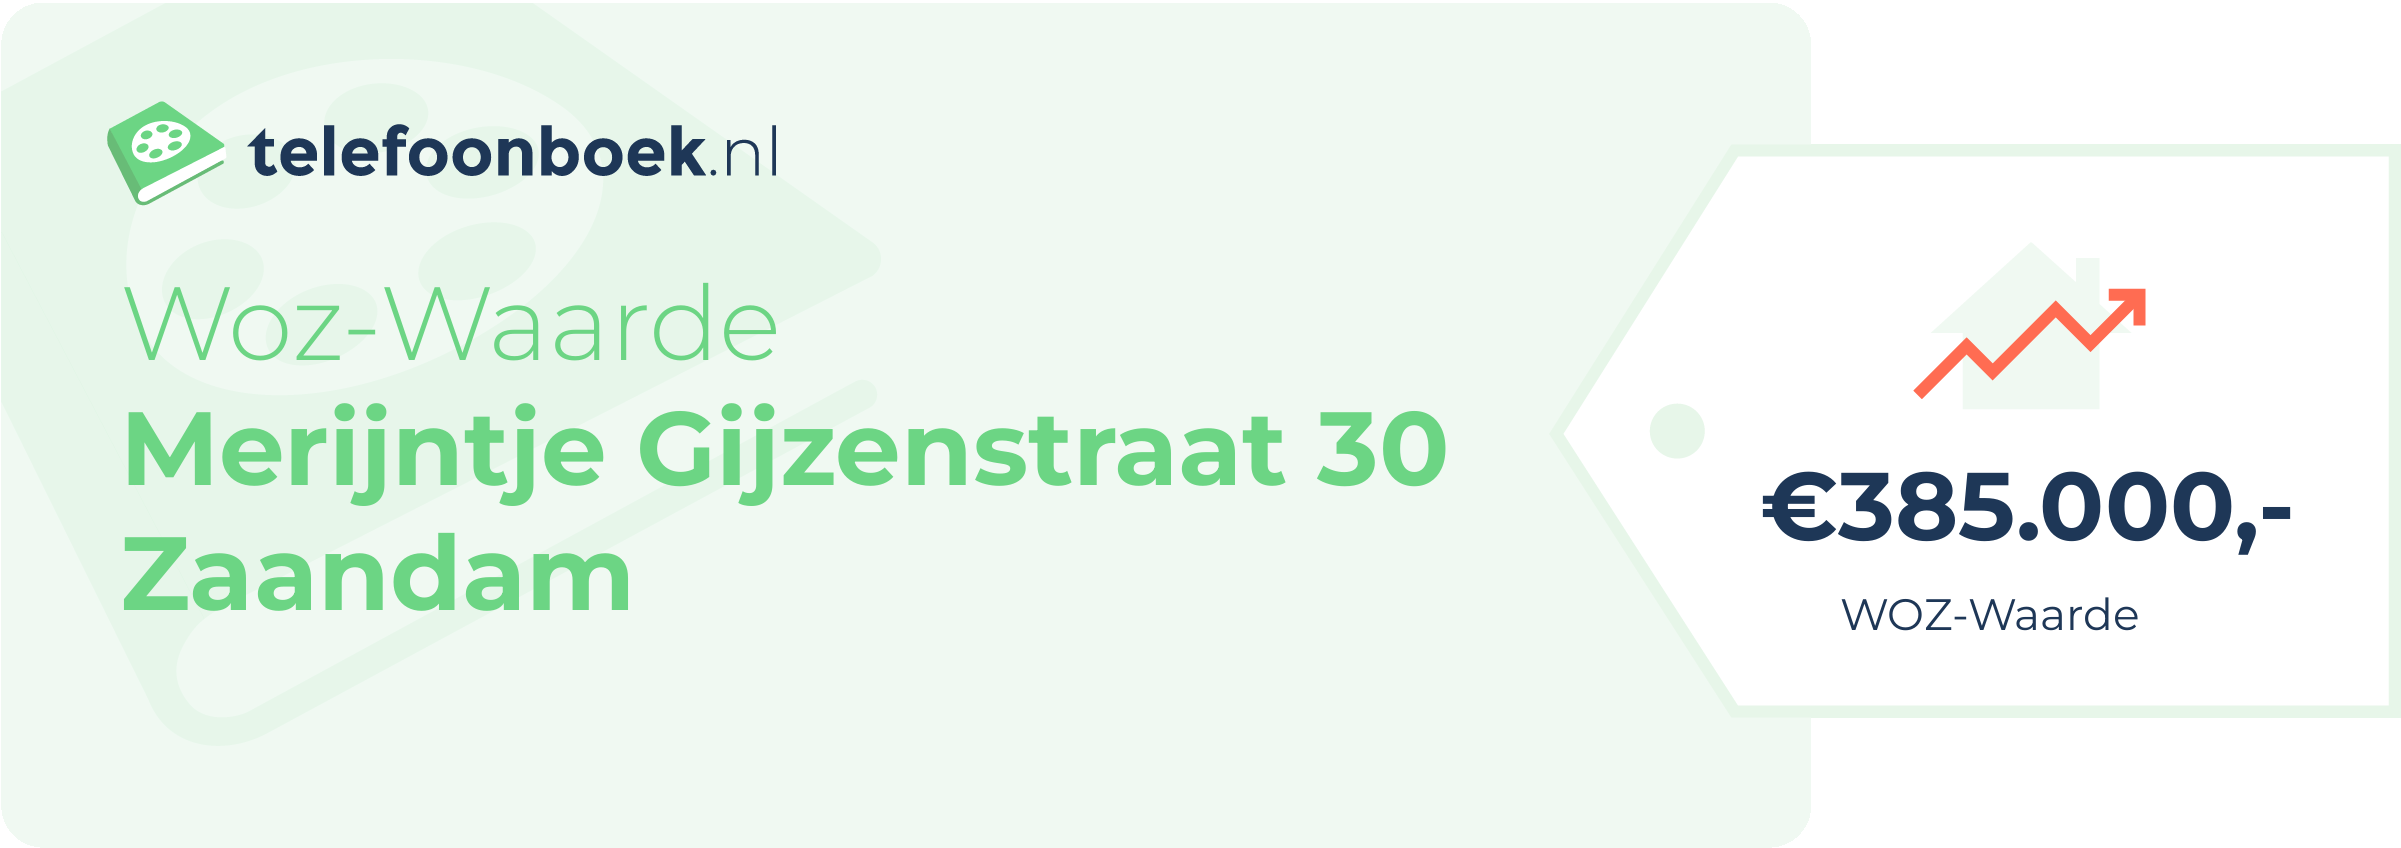 WOZ-waarde Merijntje Gijzenstraat 30 Zaandam